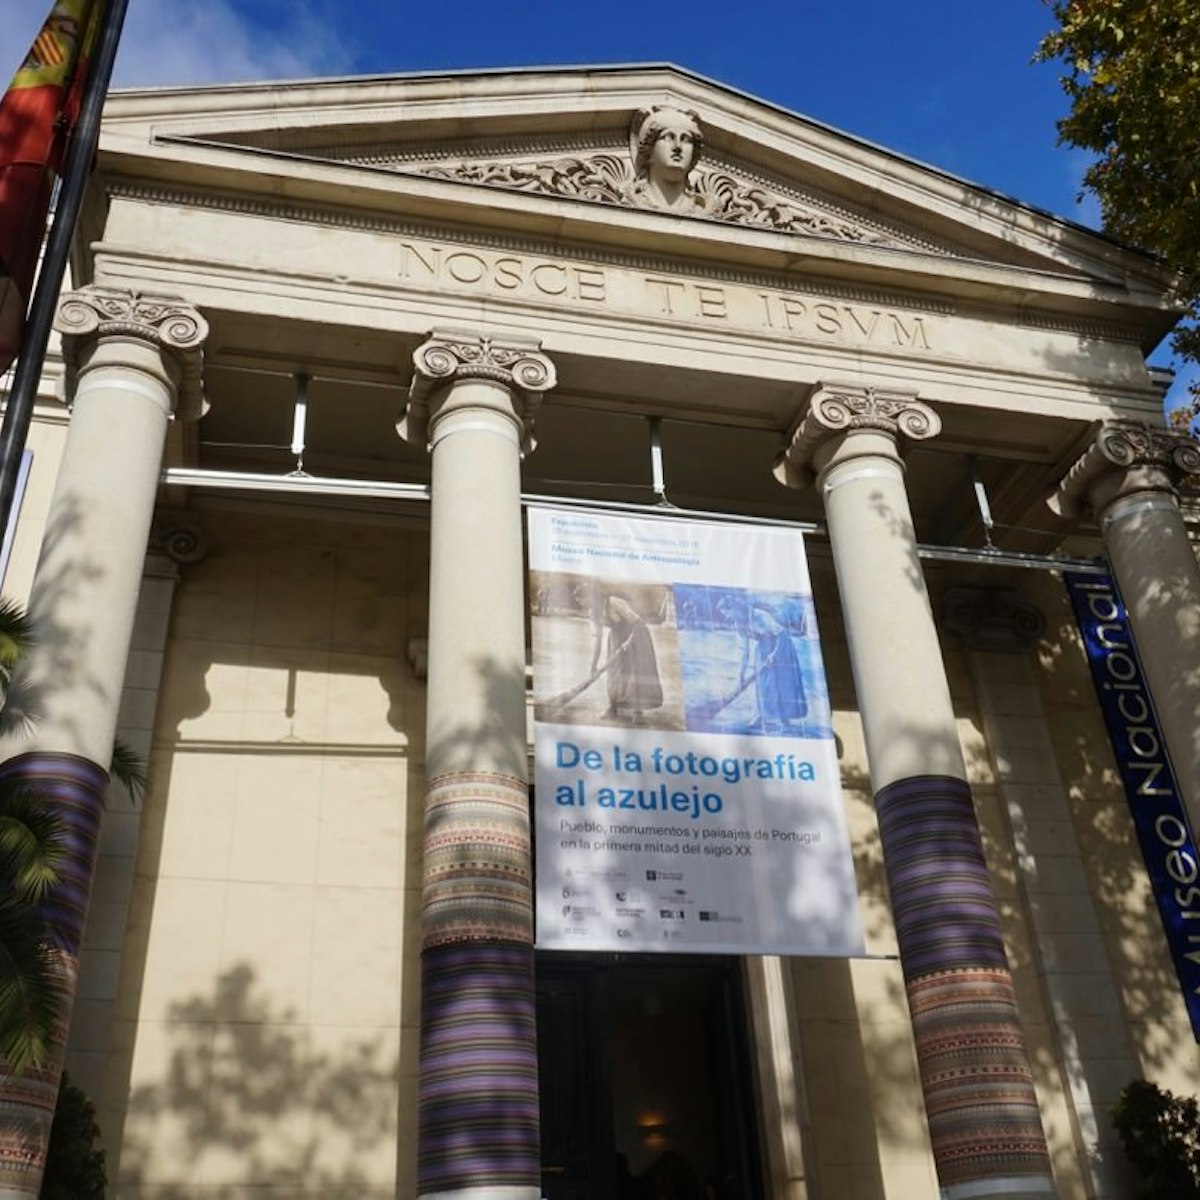 The facade of the Museo Nacional de Antropología.